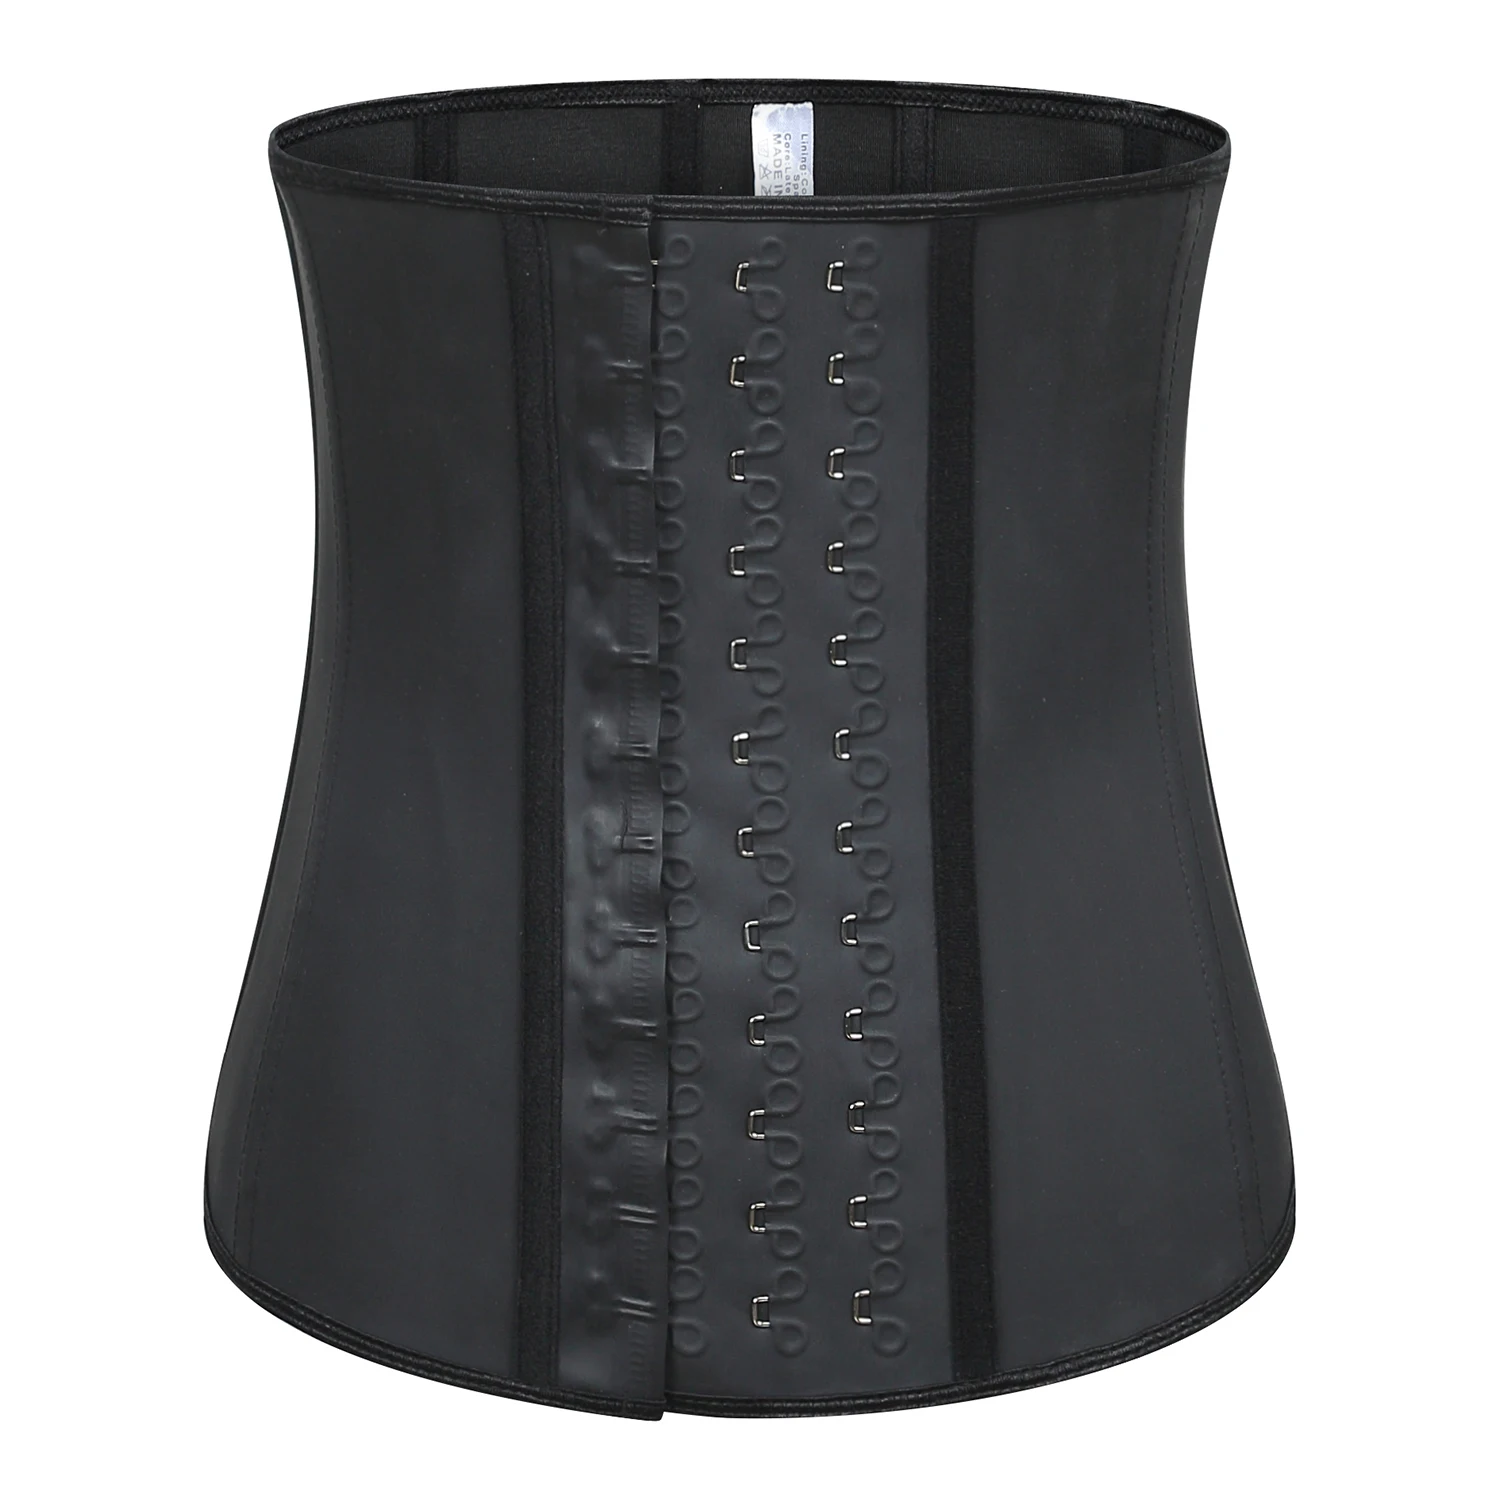 

Langqin 100% latex waist trainer women belt 9 steel boned sauna slimming shaper loss weight corset cincher with for ladies, Black